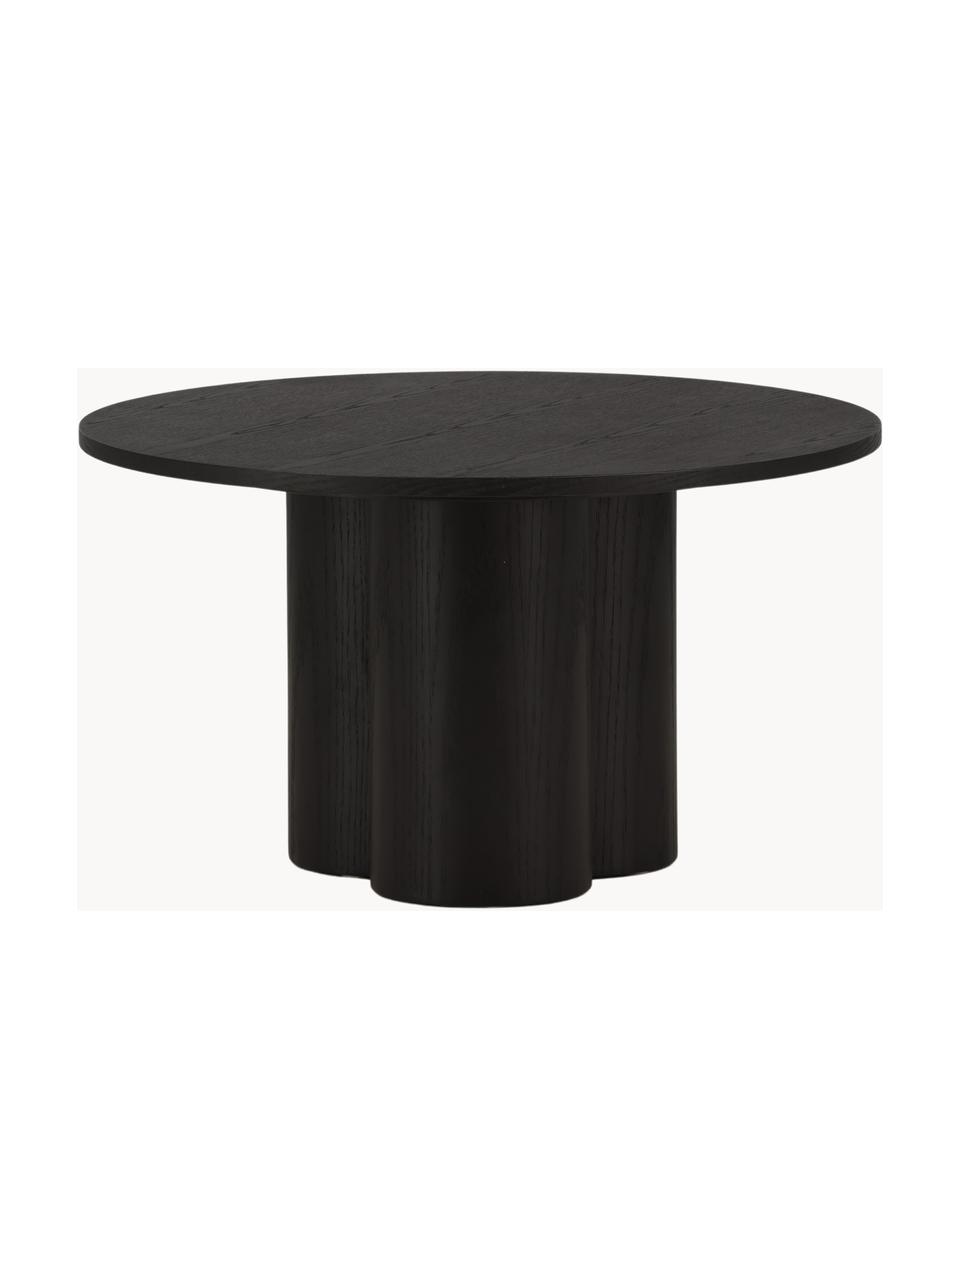 Kulatý dřevěný konferenční stolek Olivia, MDF deska (dřevovláknitá deska střední hustoty), Dřevo, černě lakované, Ø 80 cm